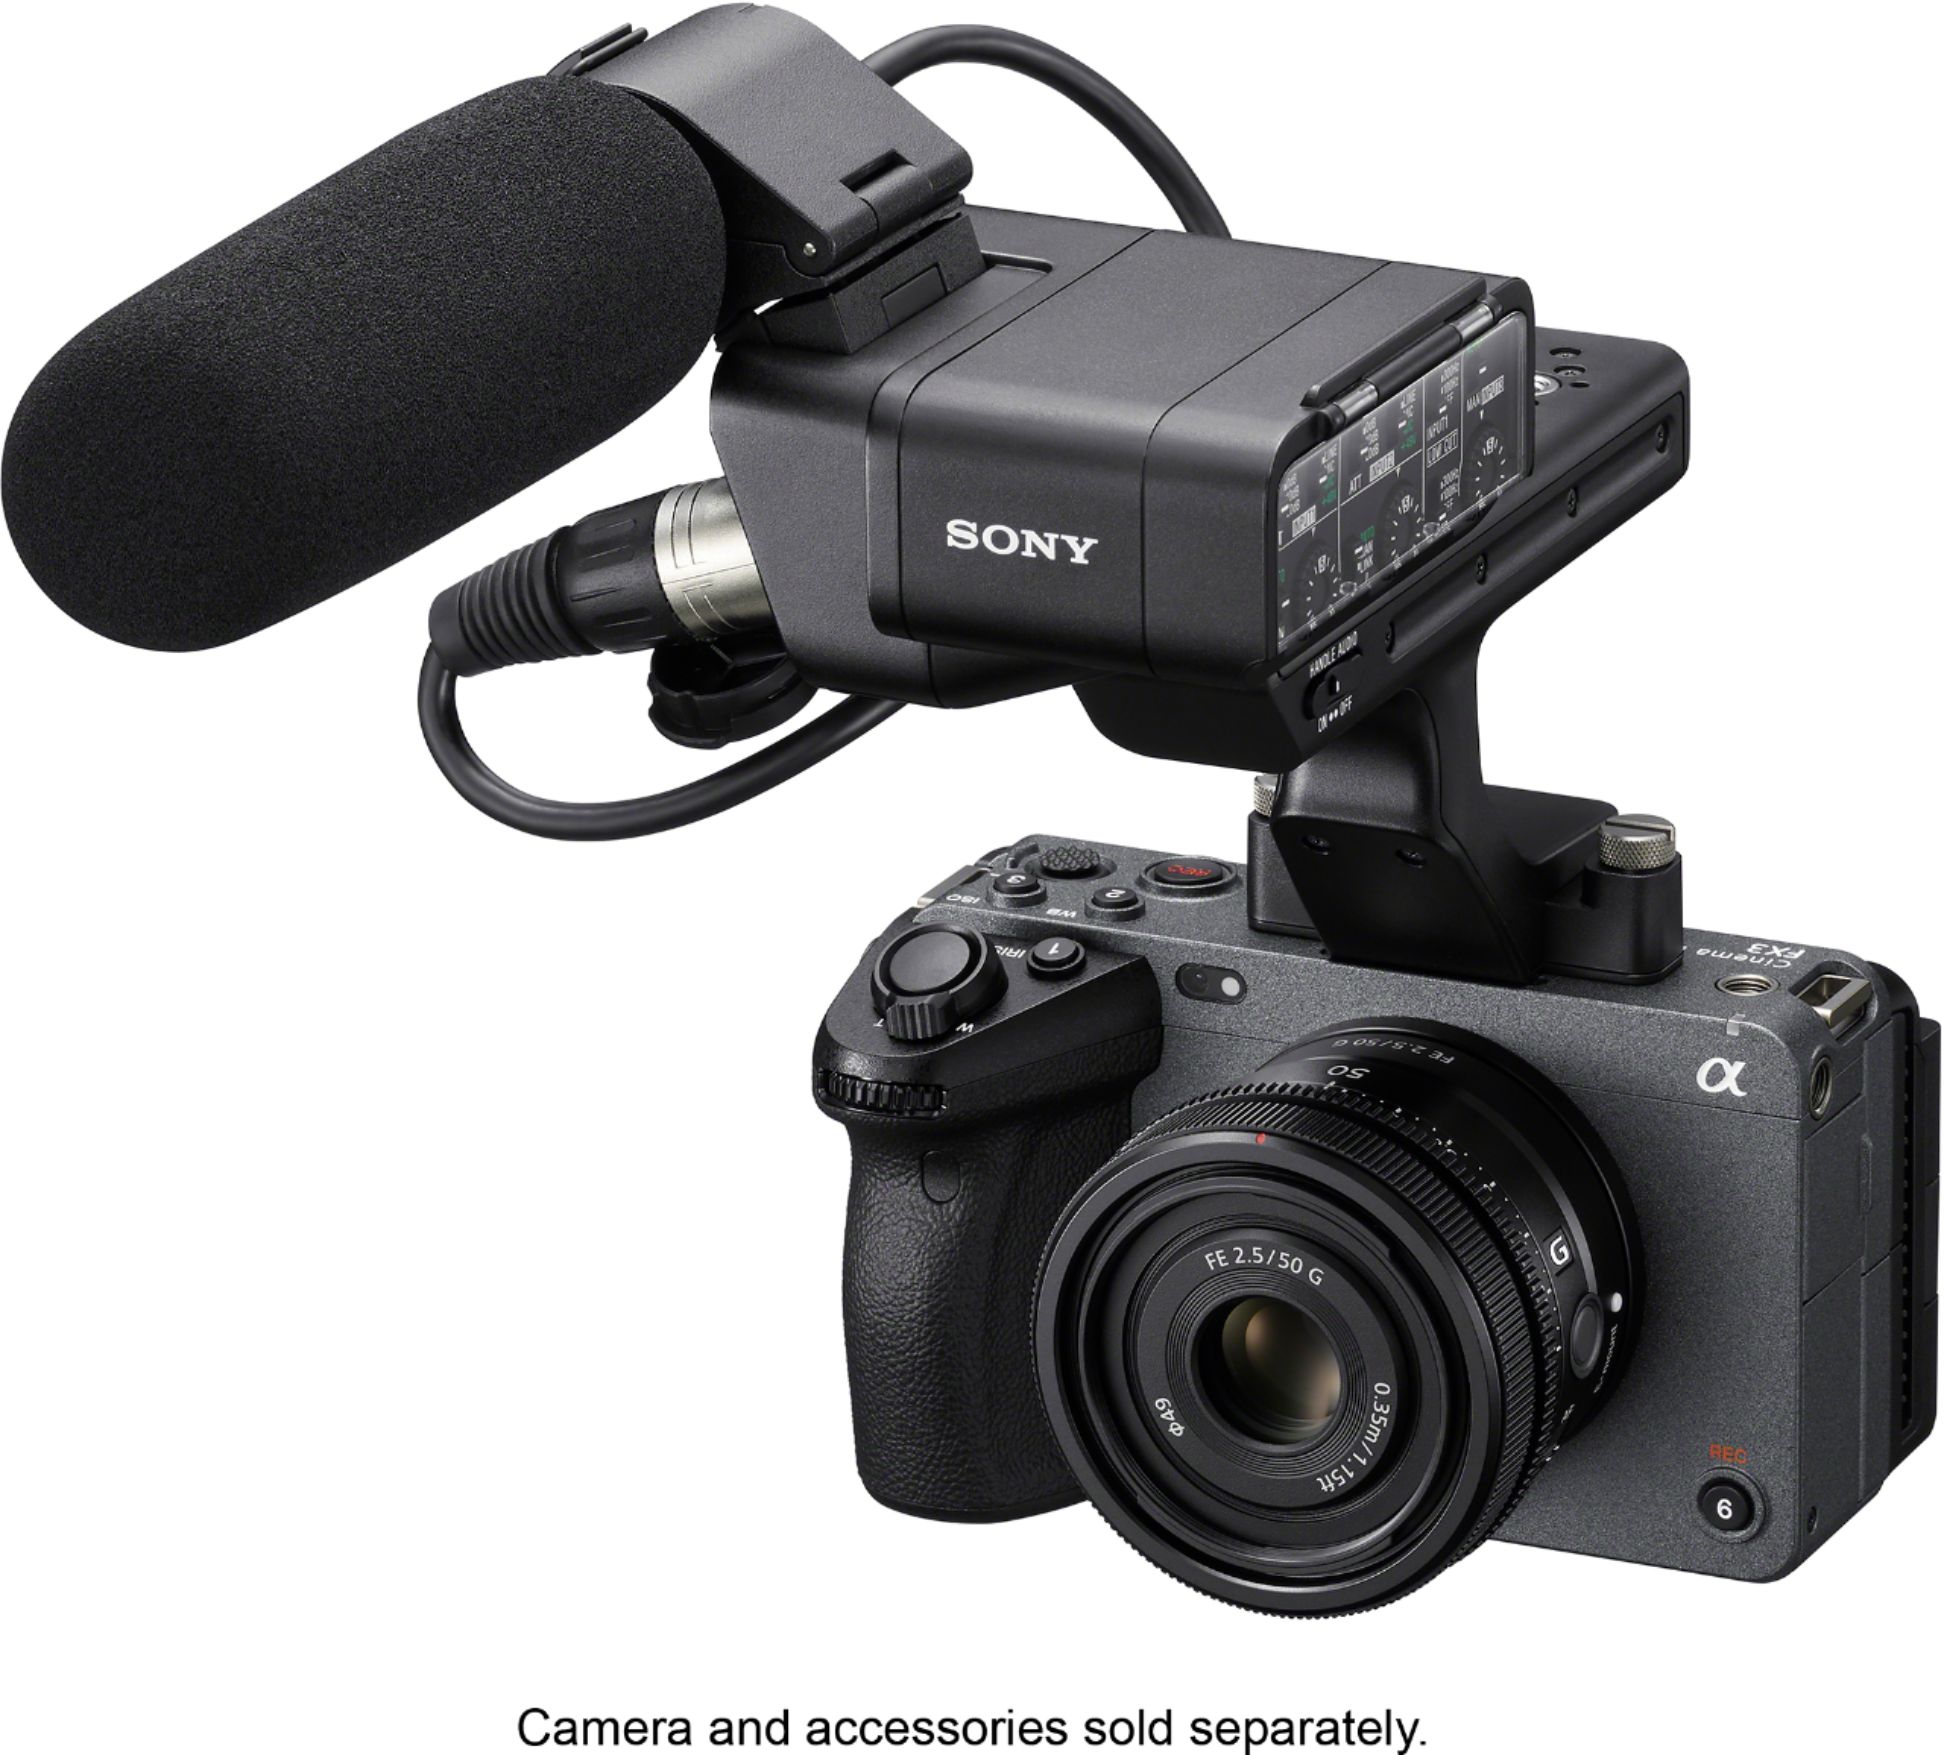 FE 50mm F2.5 G Full-frame Ultra-compact G Lens for Sony Alpha E 